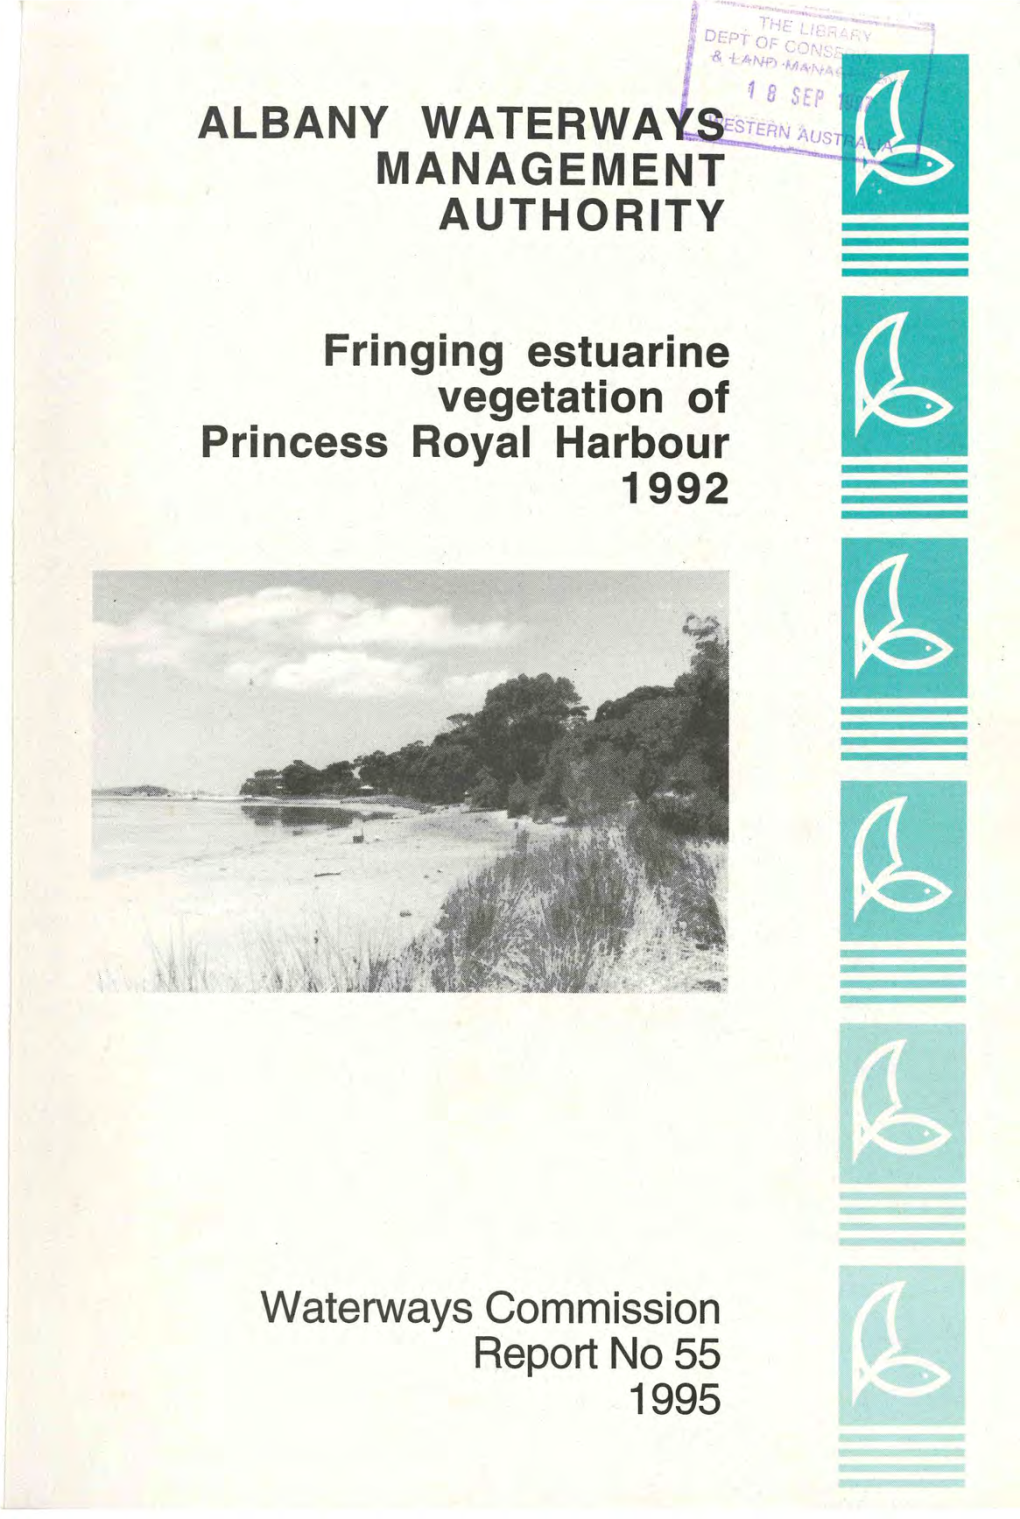 Fringing Estuarine Vegetation of Princess Royal Harbour 1992